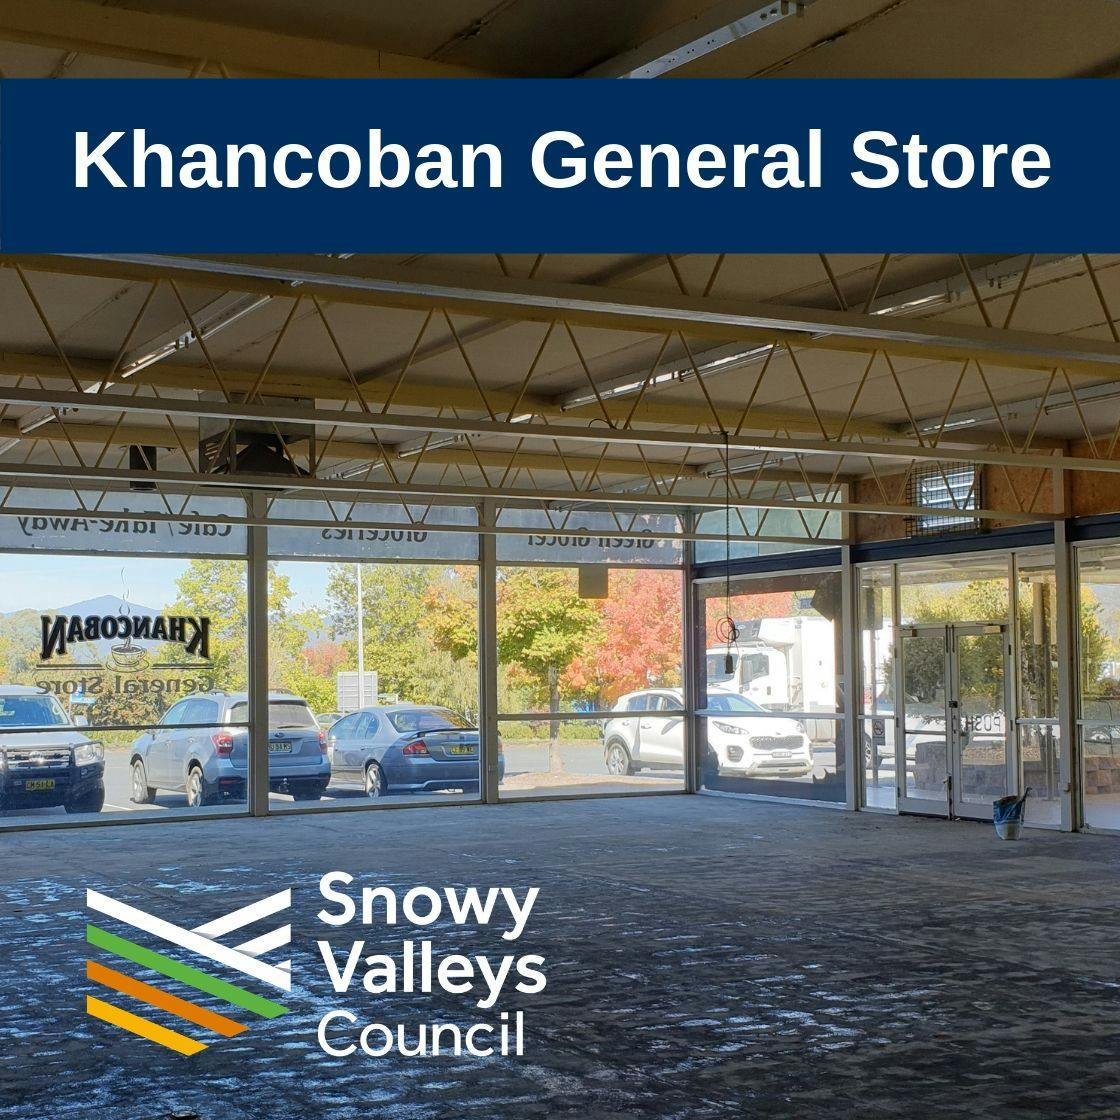 Khancoban General Store